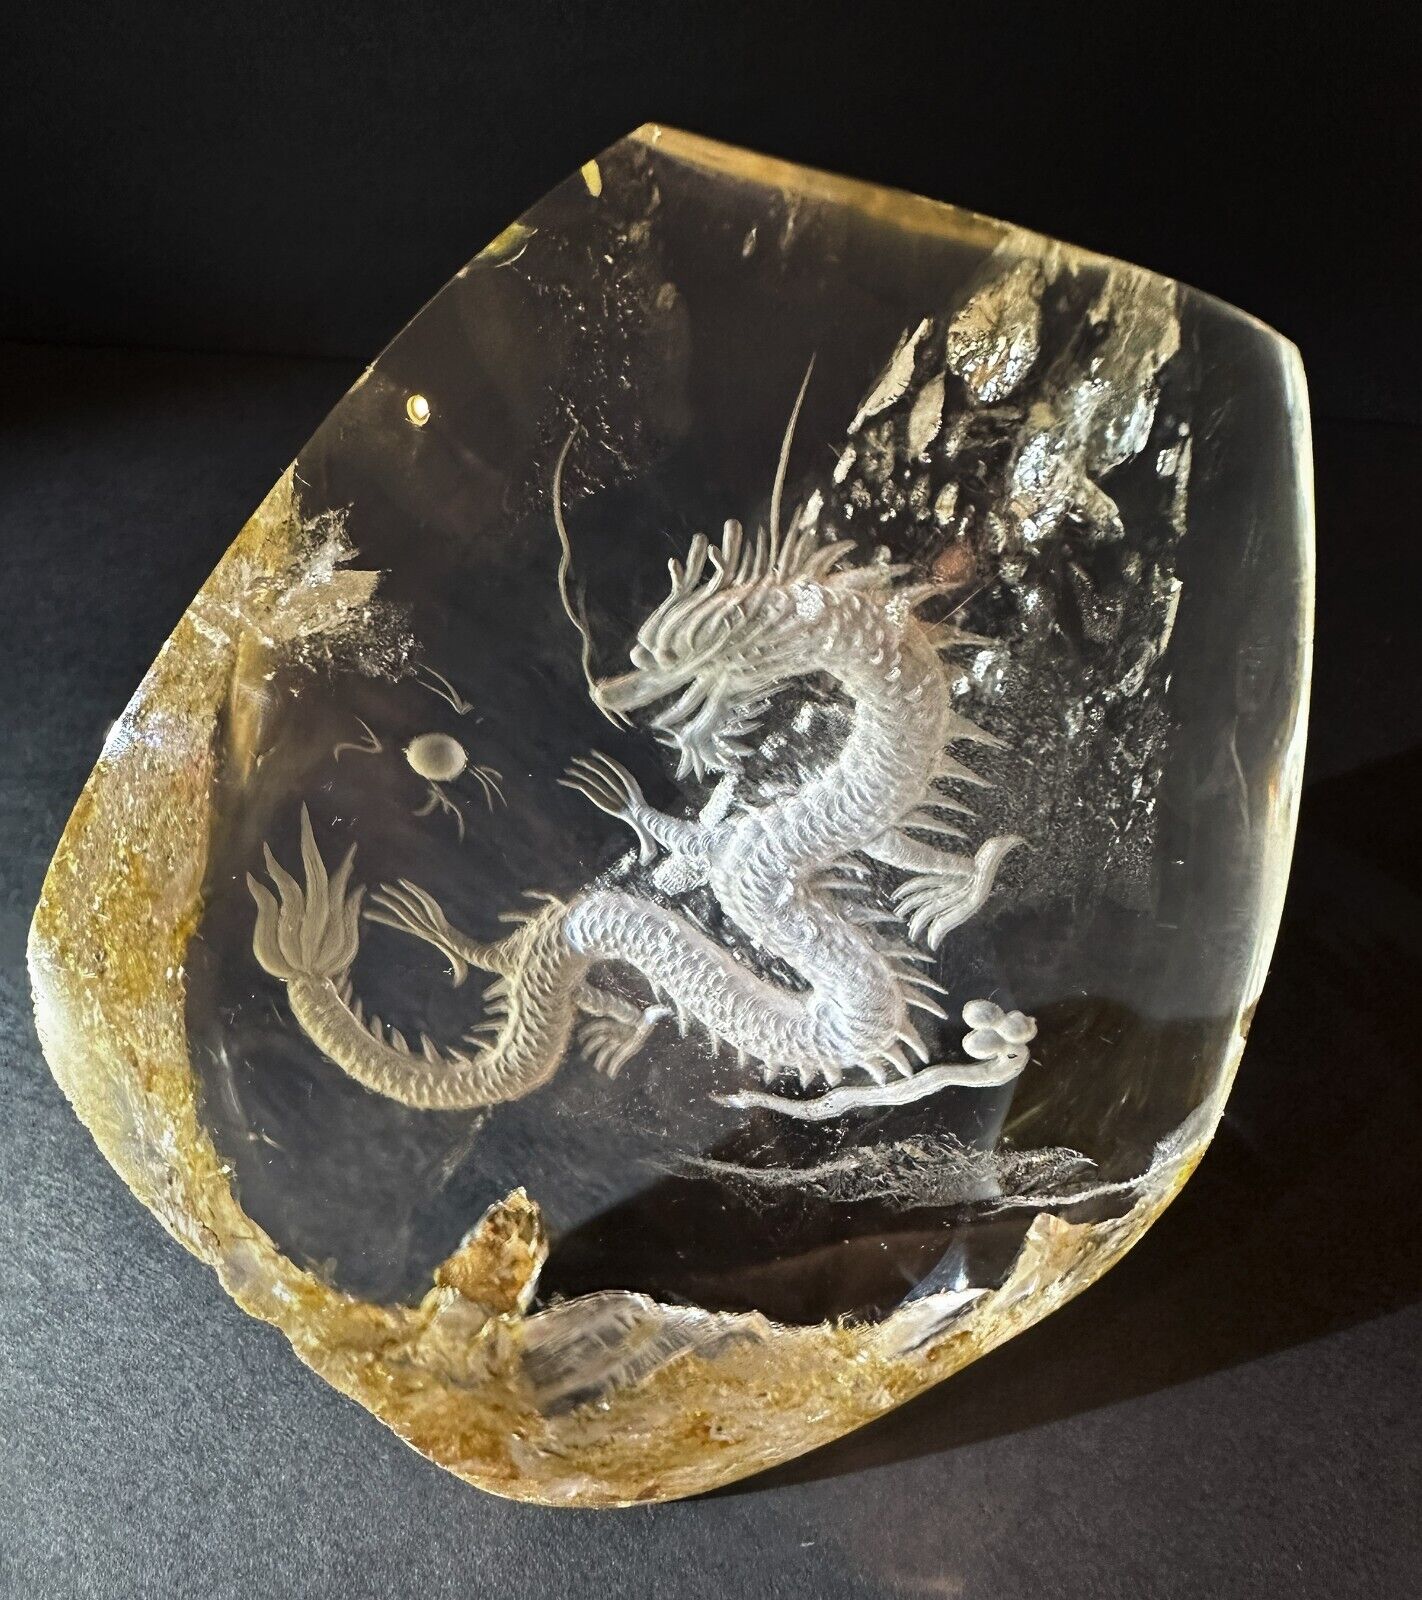 Carved Dragon in Natural Quartz Crystal with Golden Healer